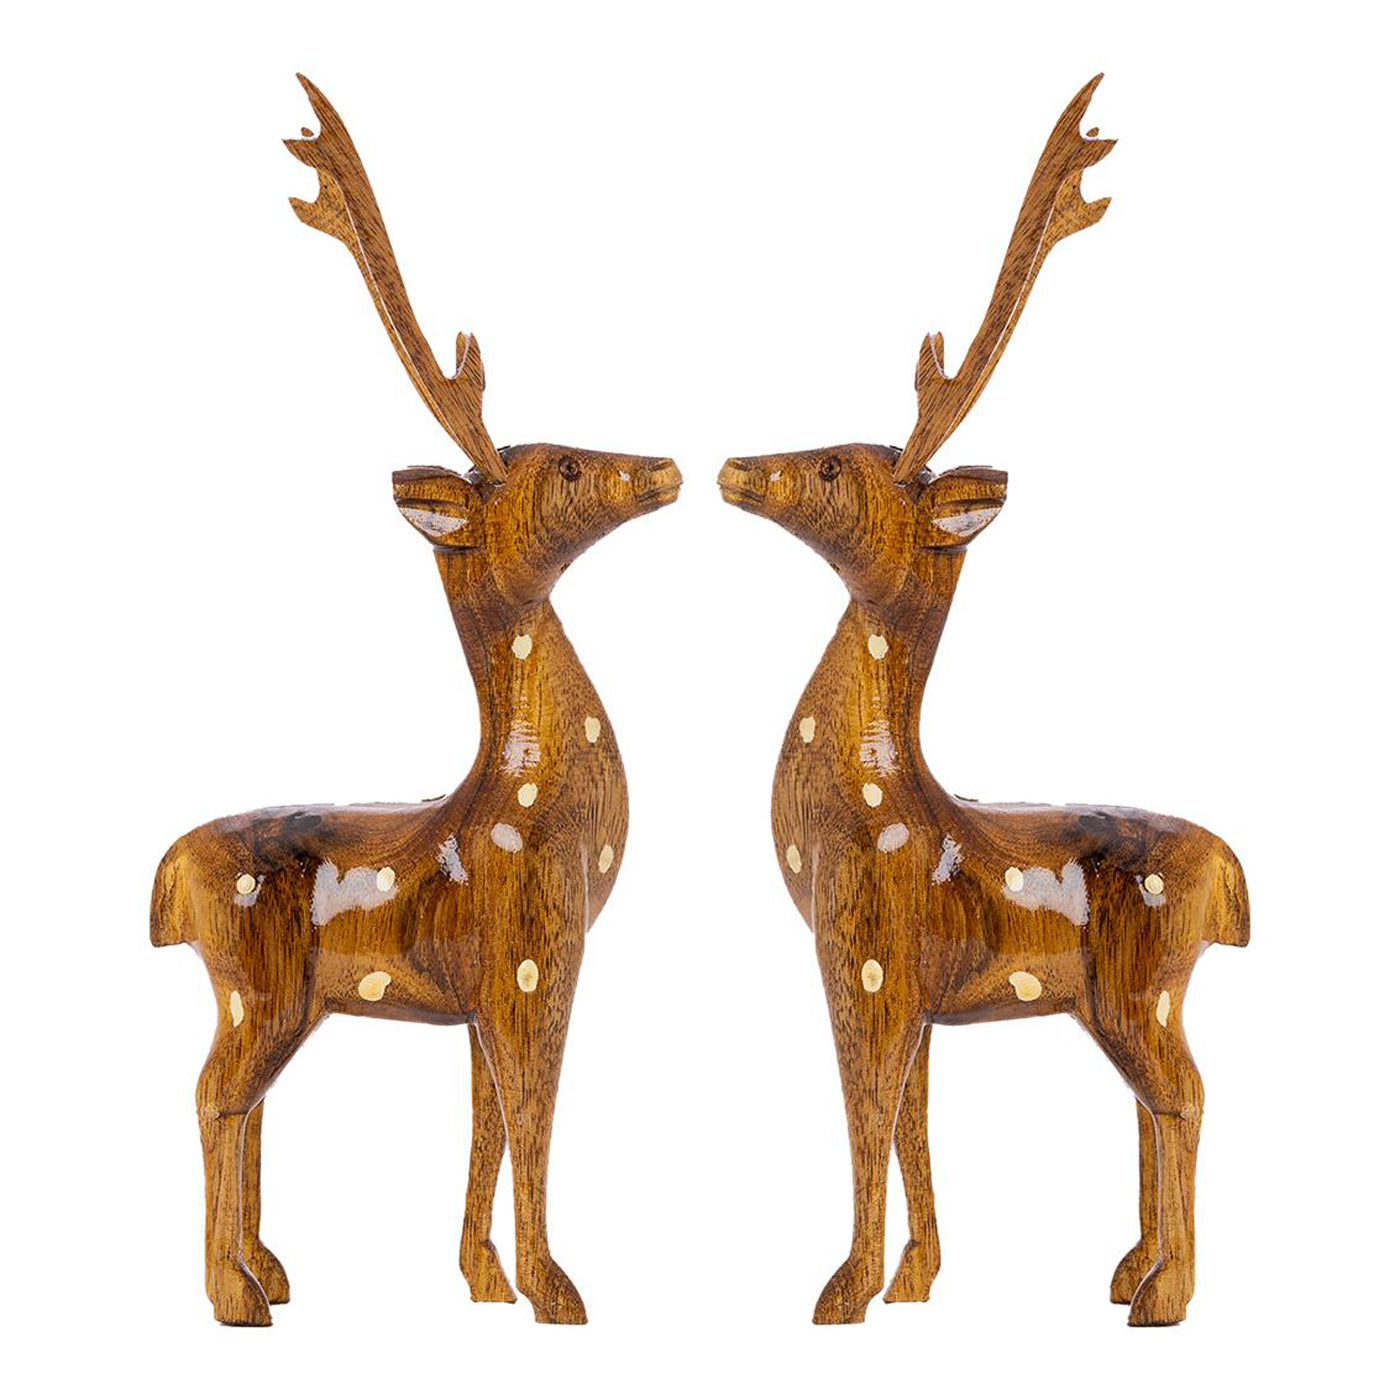 Wooden Dotted Deer Small Artisan Decor